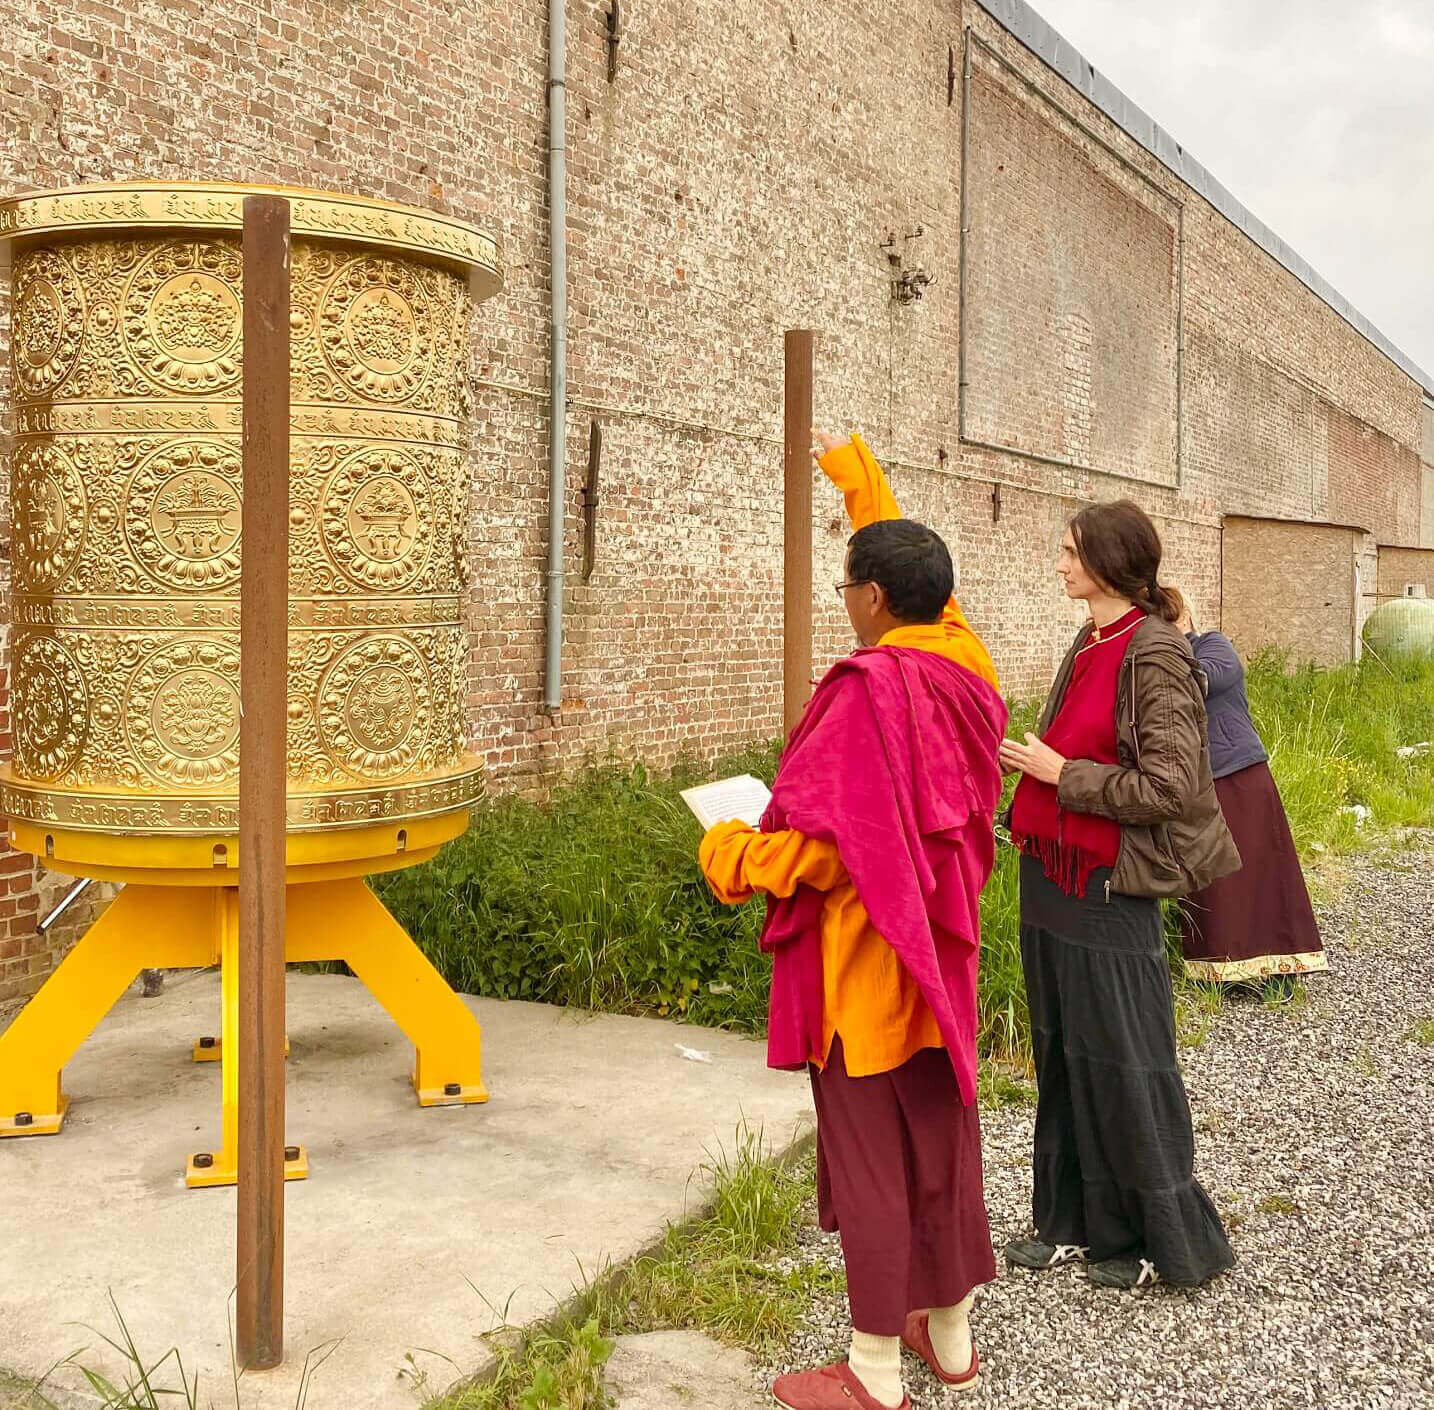 Patrul Rinpoche Buddhism teacher and artist